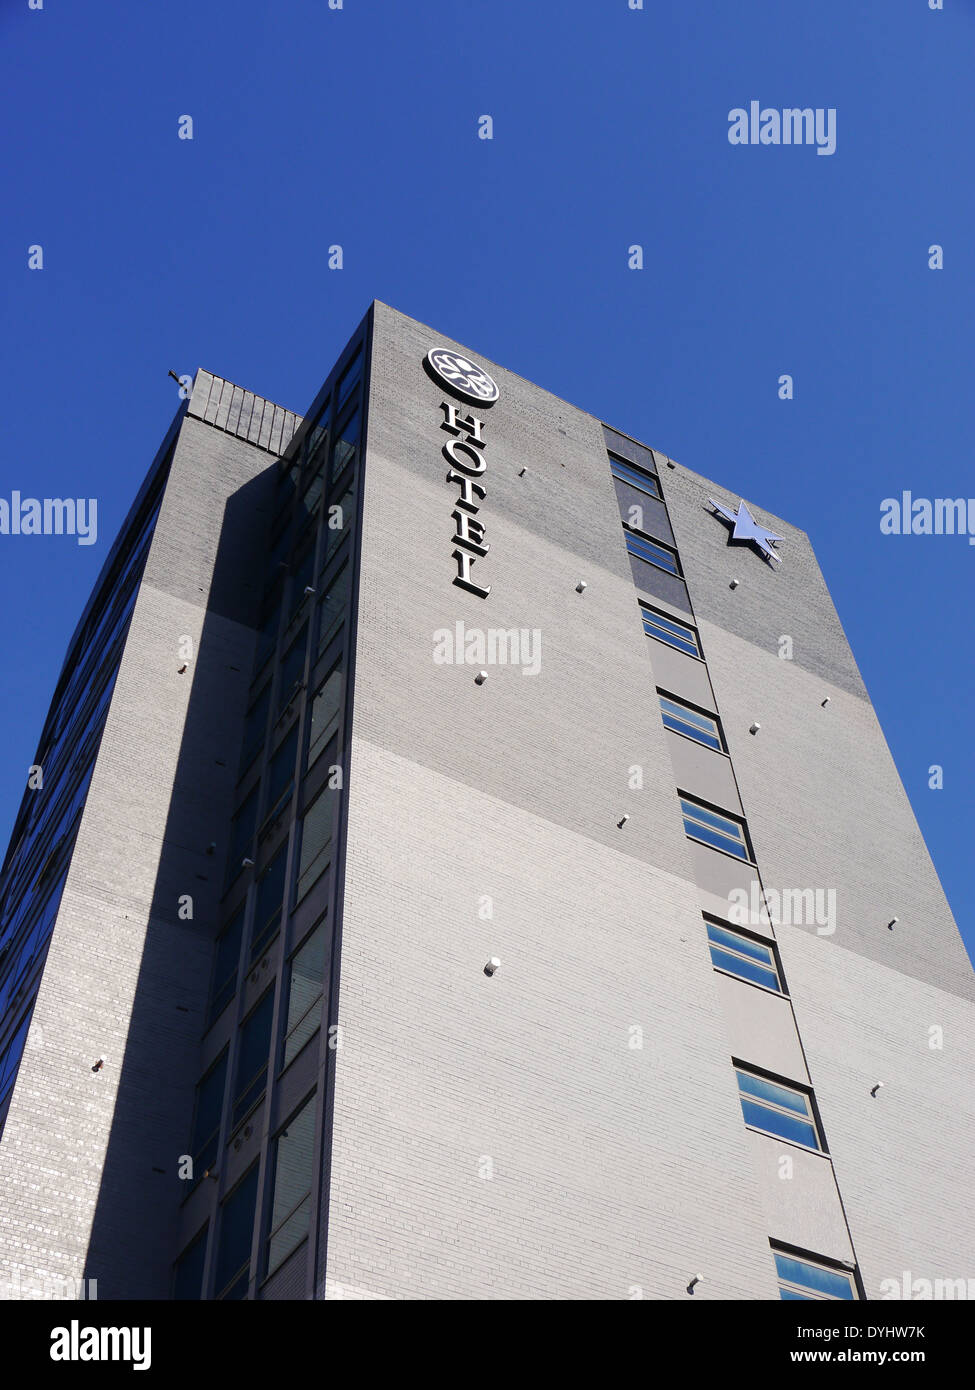 Architettura / le caratteristiche architetturali di Sandman Signature Hotel, Gallowgate, Newcastle upon Tyne, England, Regno Unito Foto Stock